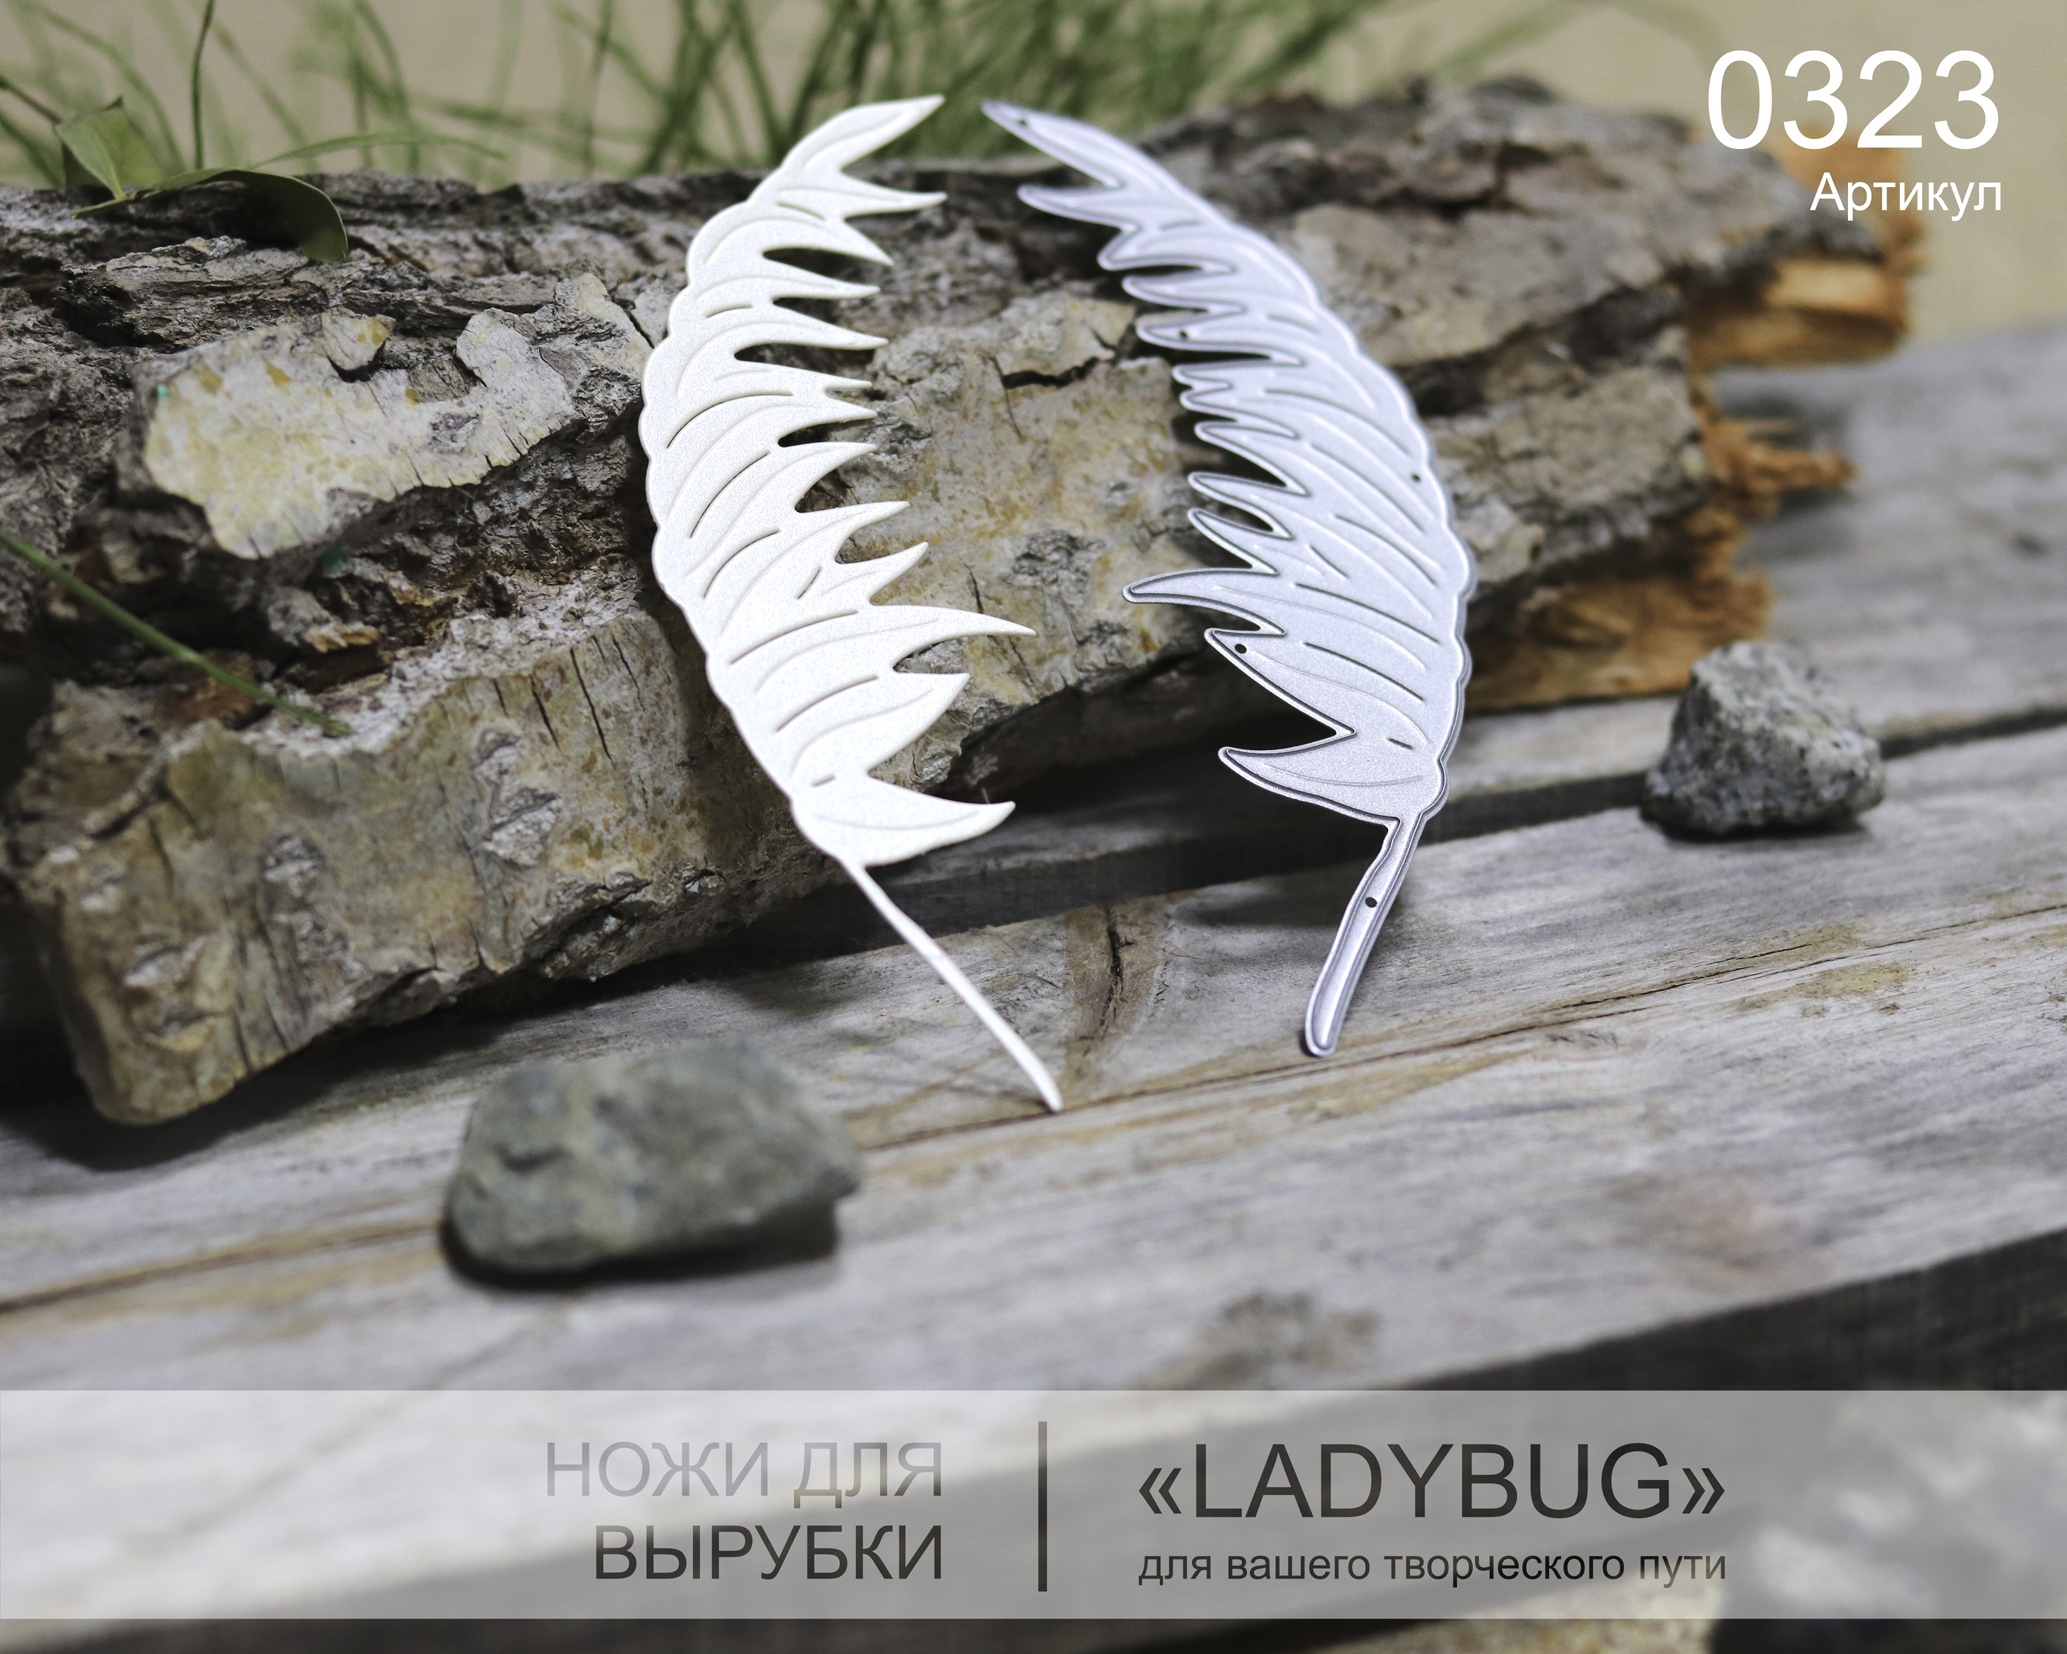 Нож для вырубки "Ветер в поле" от LadyBug